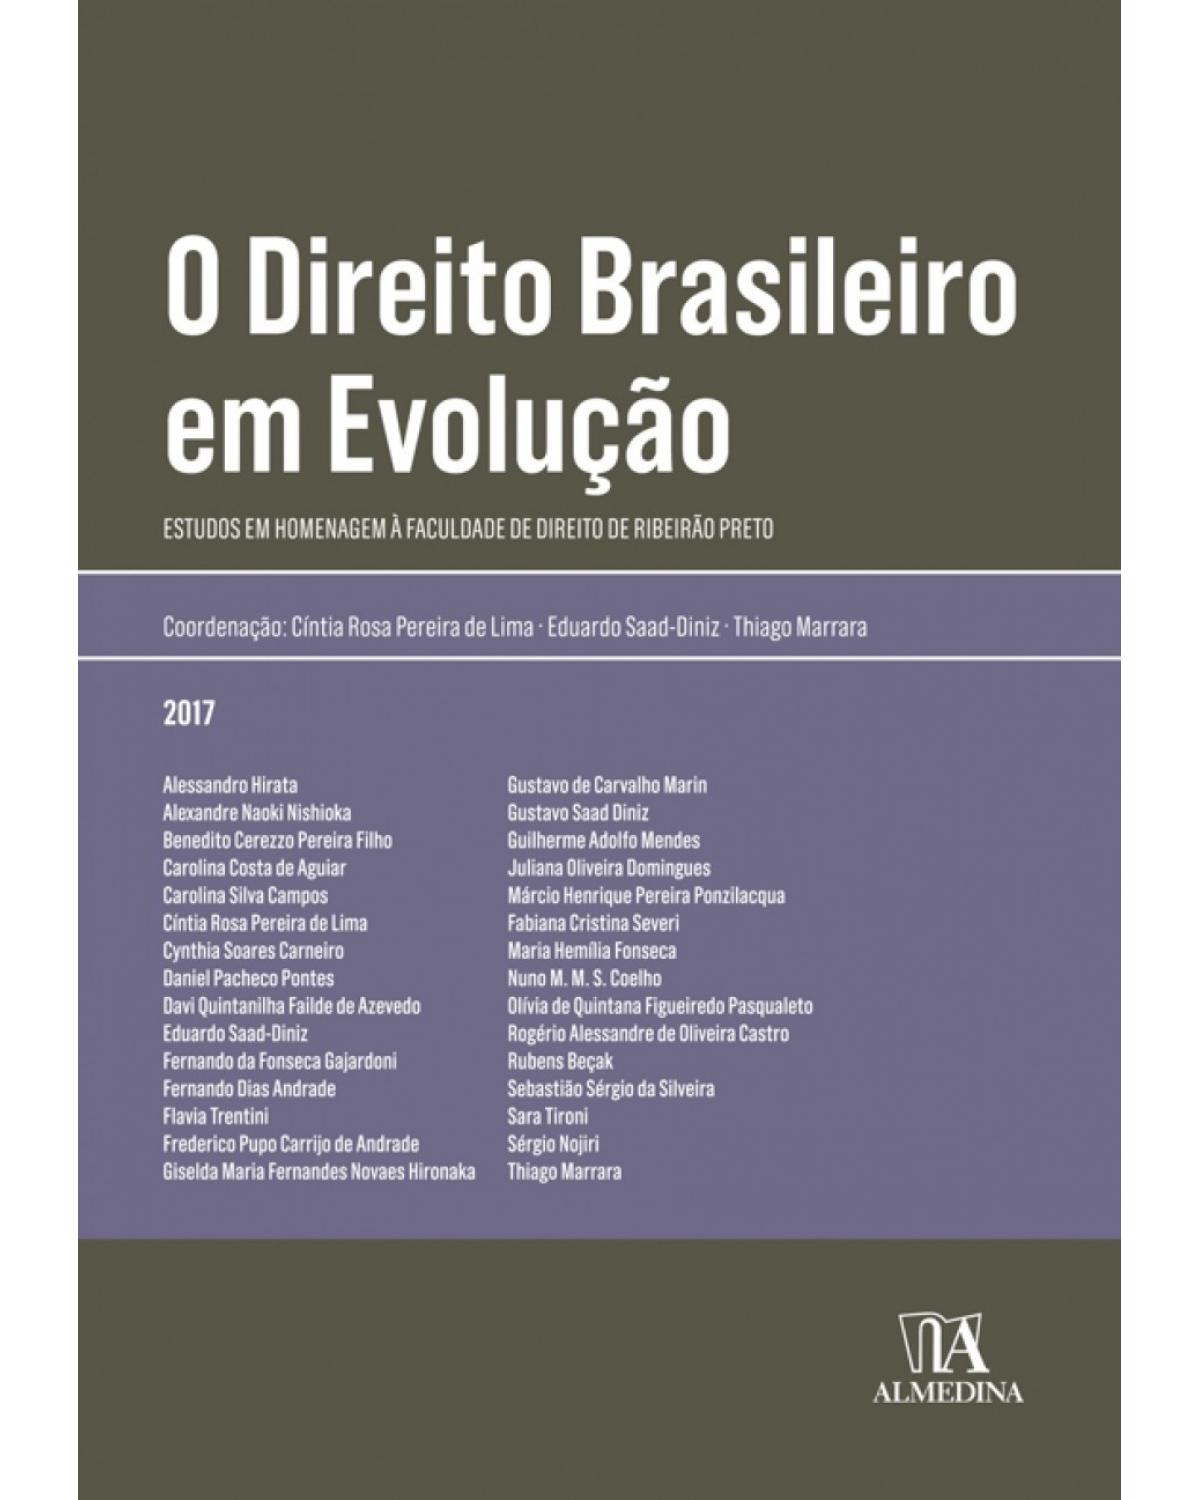 O direito brasileiro em evolução - Estudos em homenagem à Faculdade de Direito de Ribeirão Preto - 1ª Edição | 2017